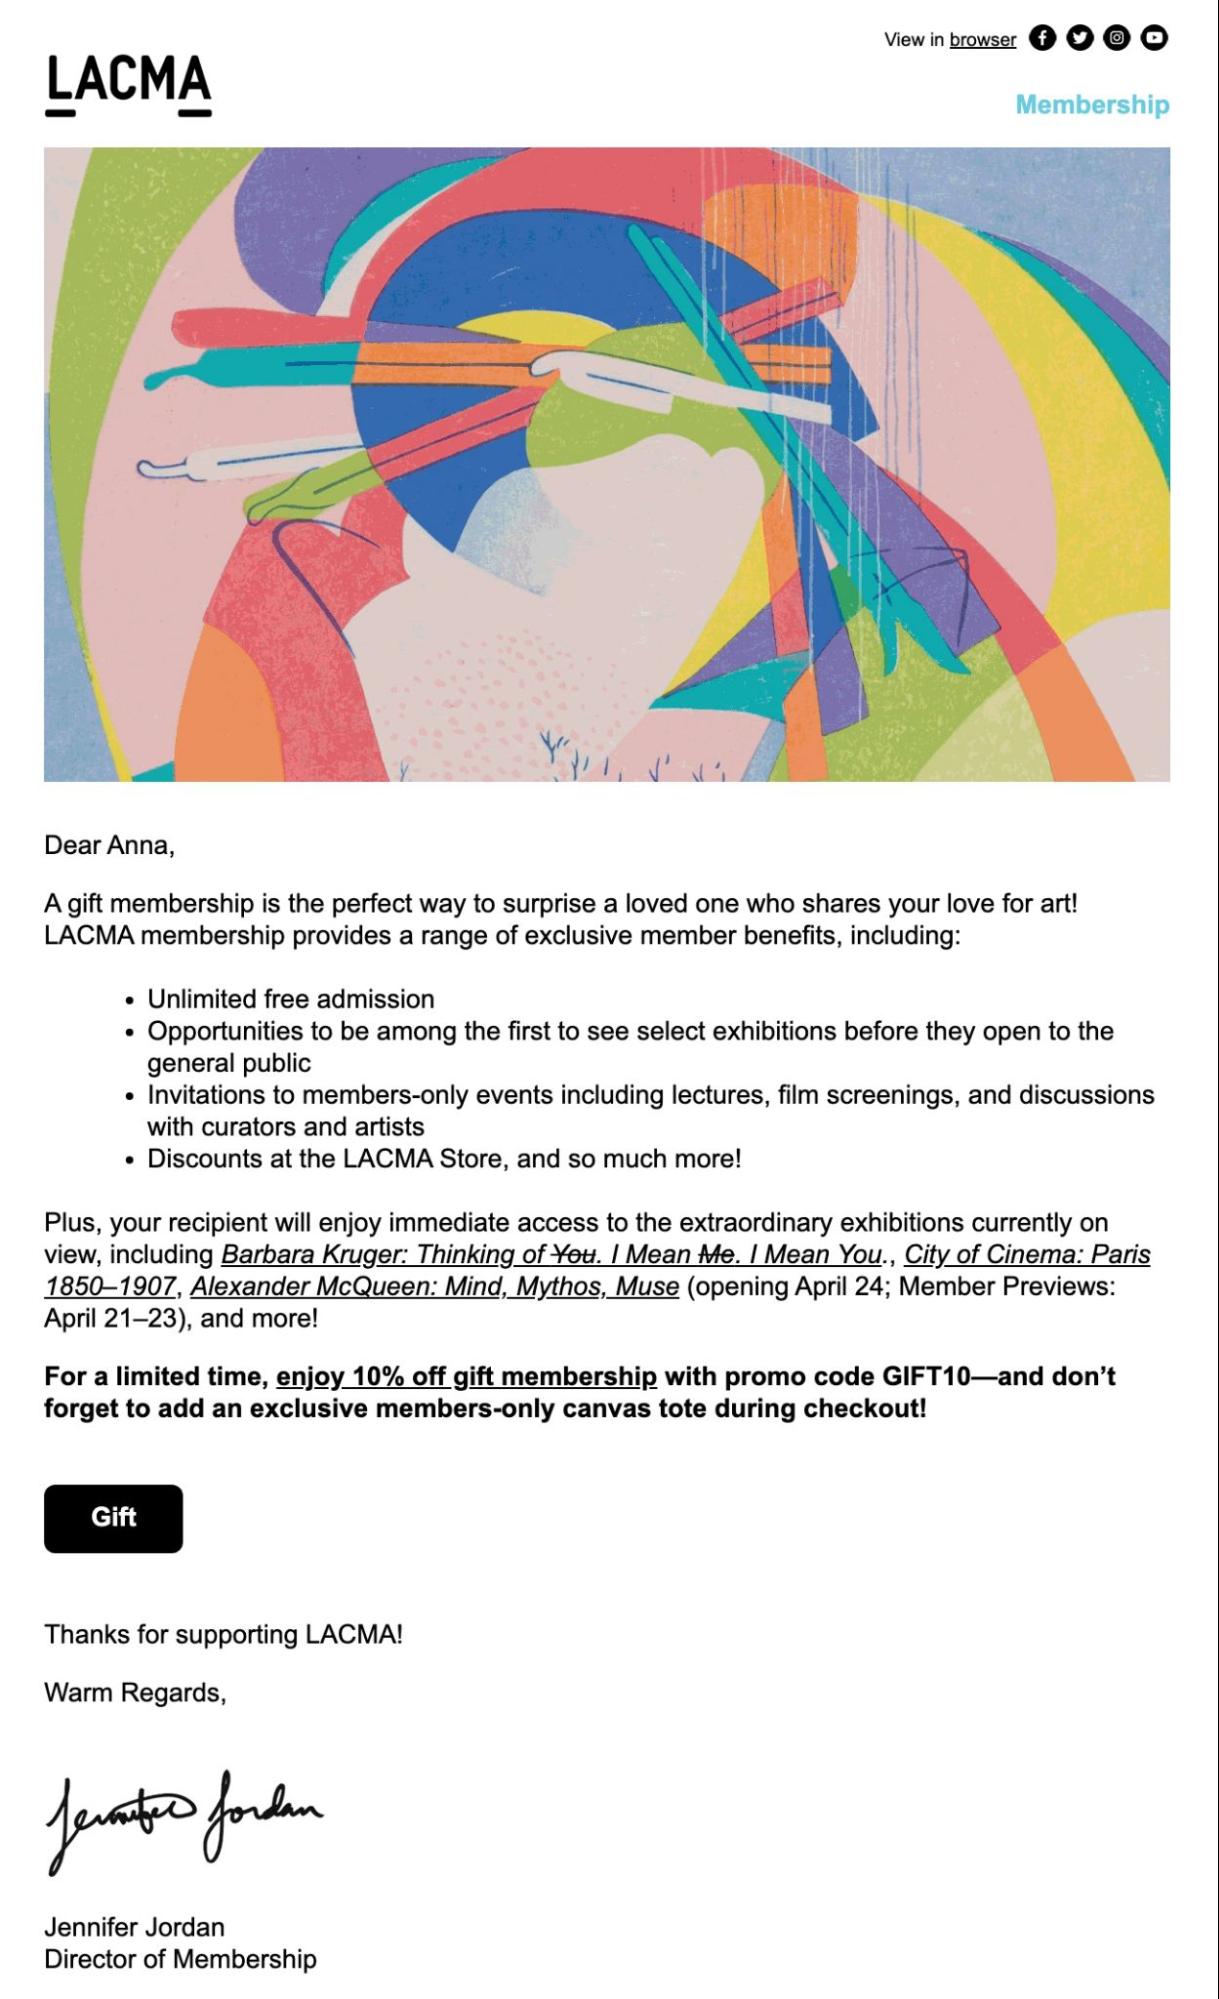 Ejemplo de correo electrónico promocional de LACMA